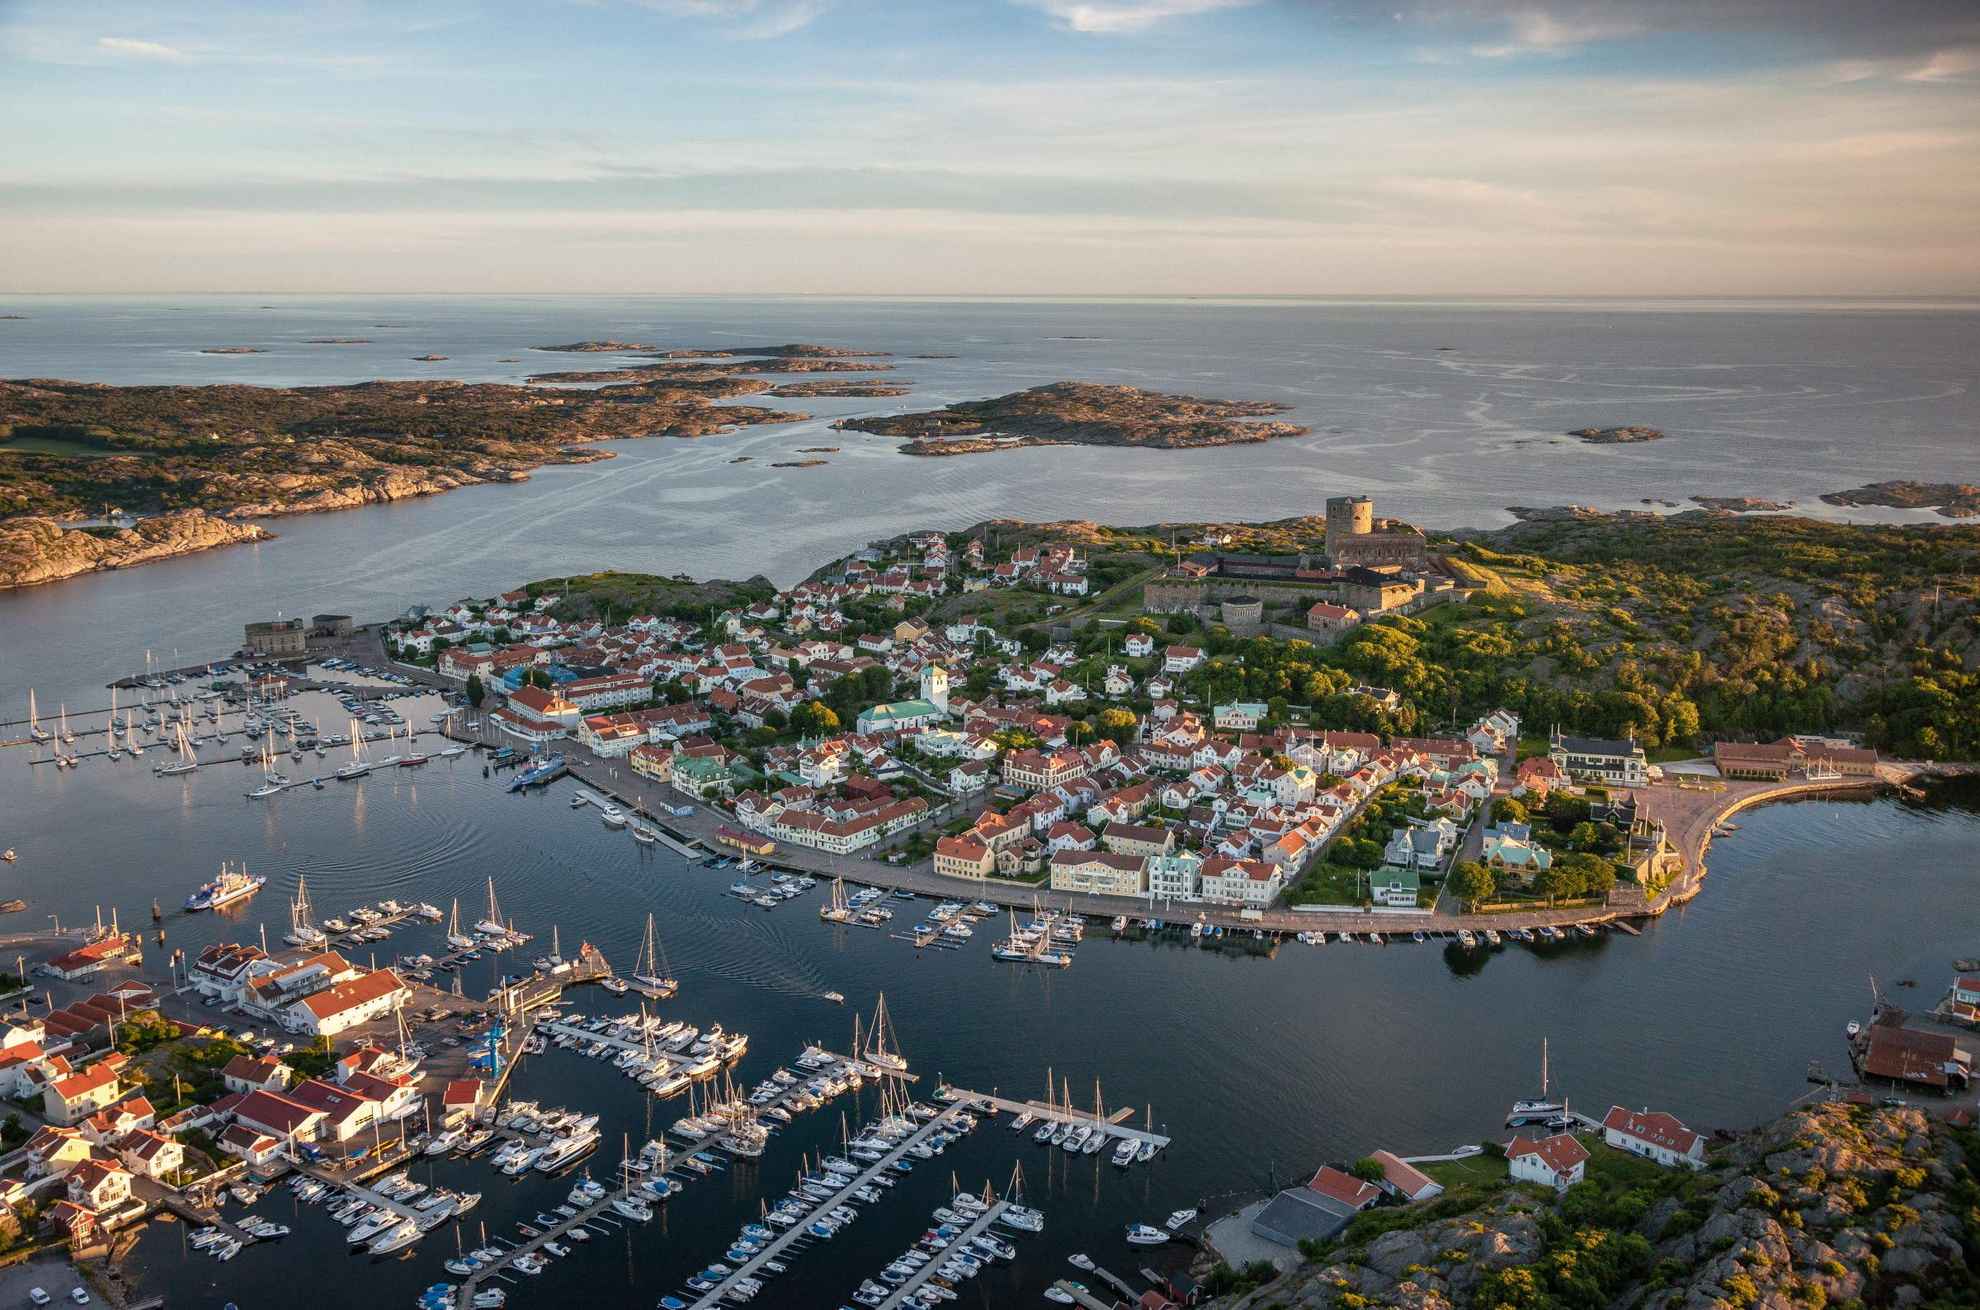 Luftaufnahme der kleinen Stadt Marstrand mit vielen Segelbooten im Vordergrund, der Festung auf der Insel in der Mitte und dem Schärengarten im Hintergrund.